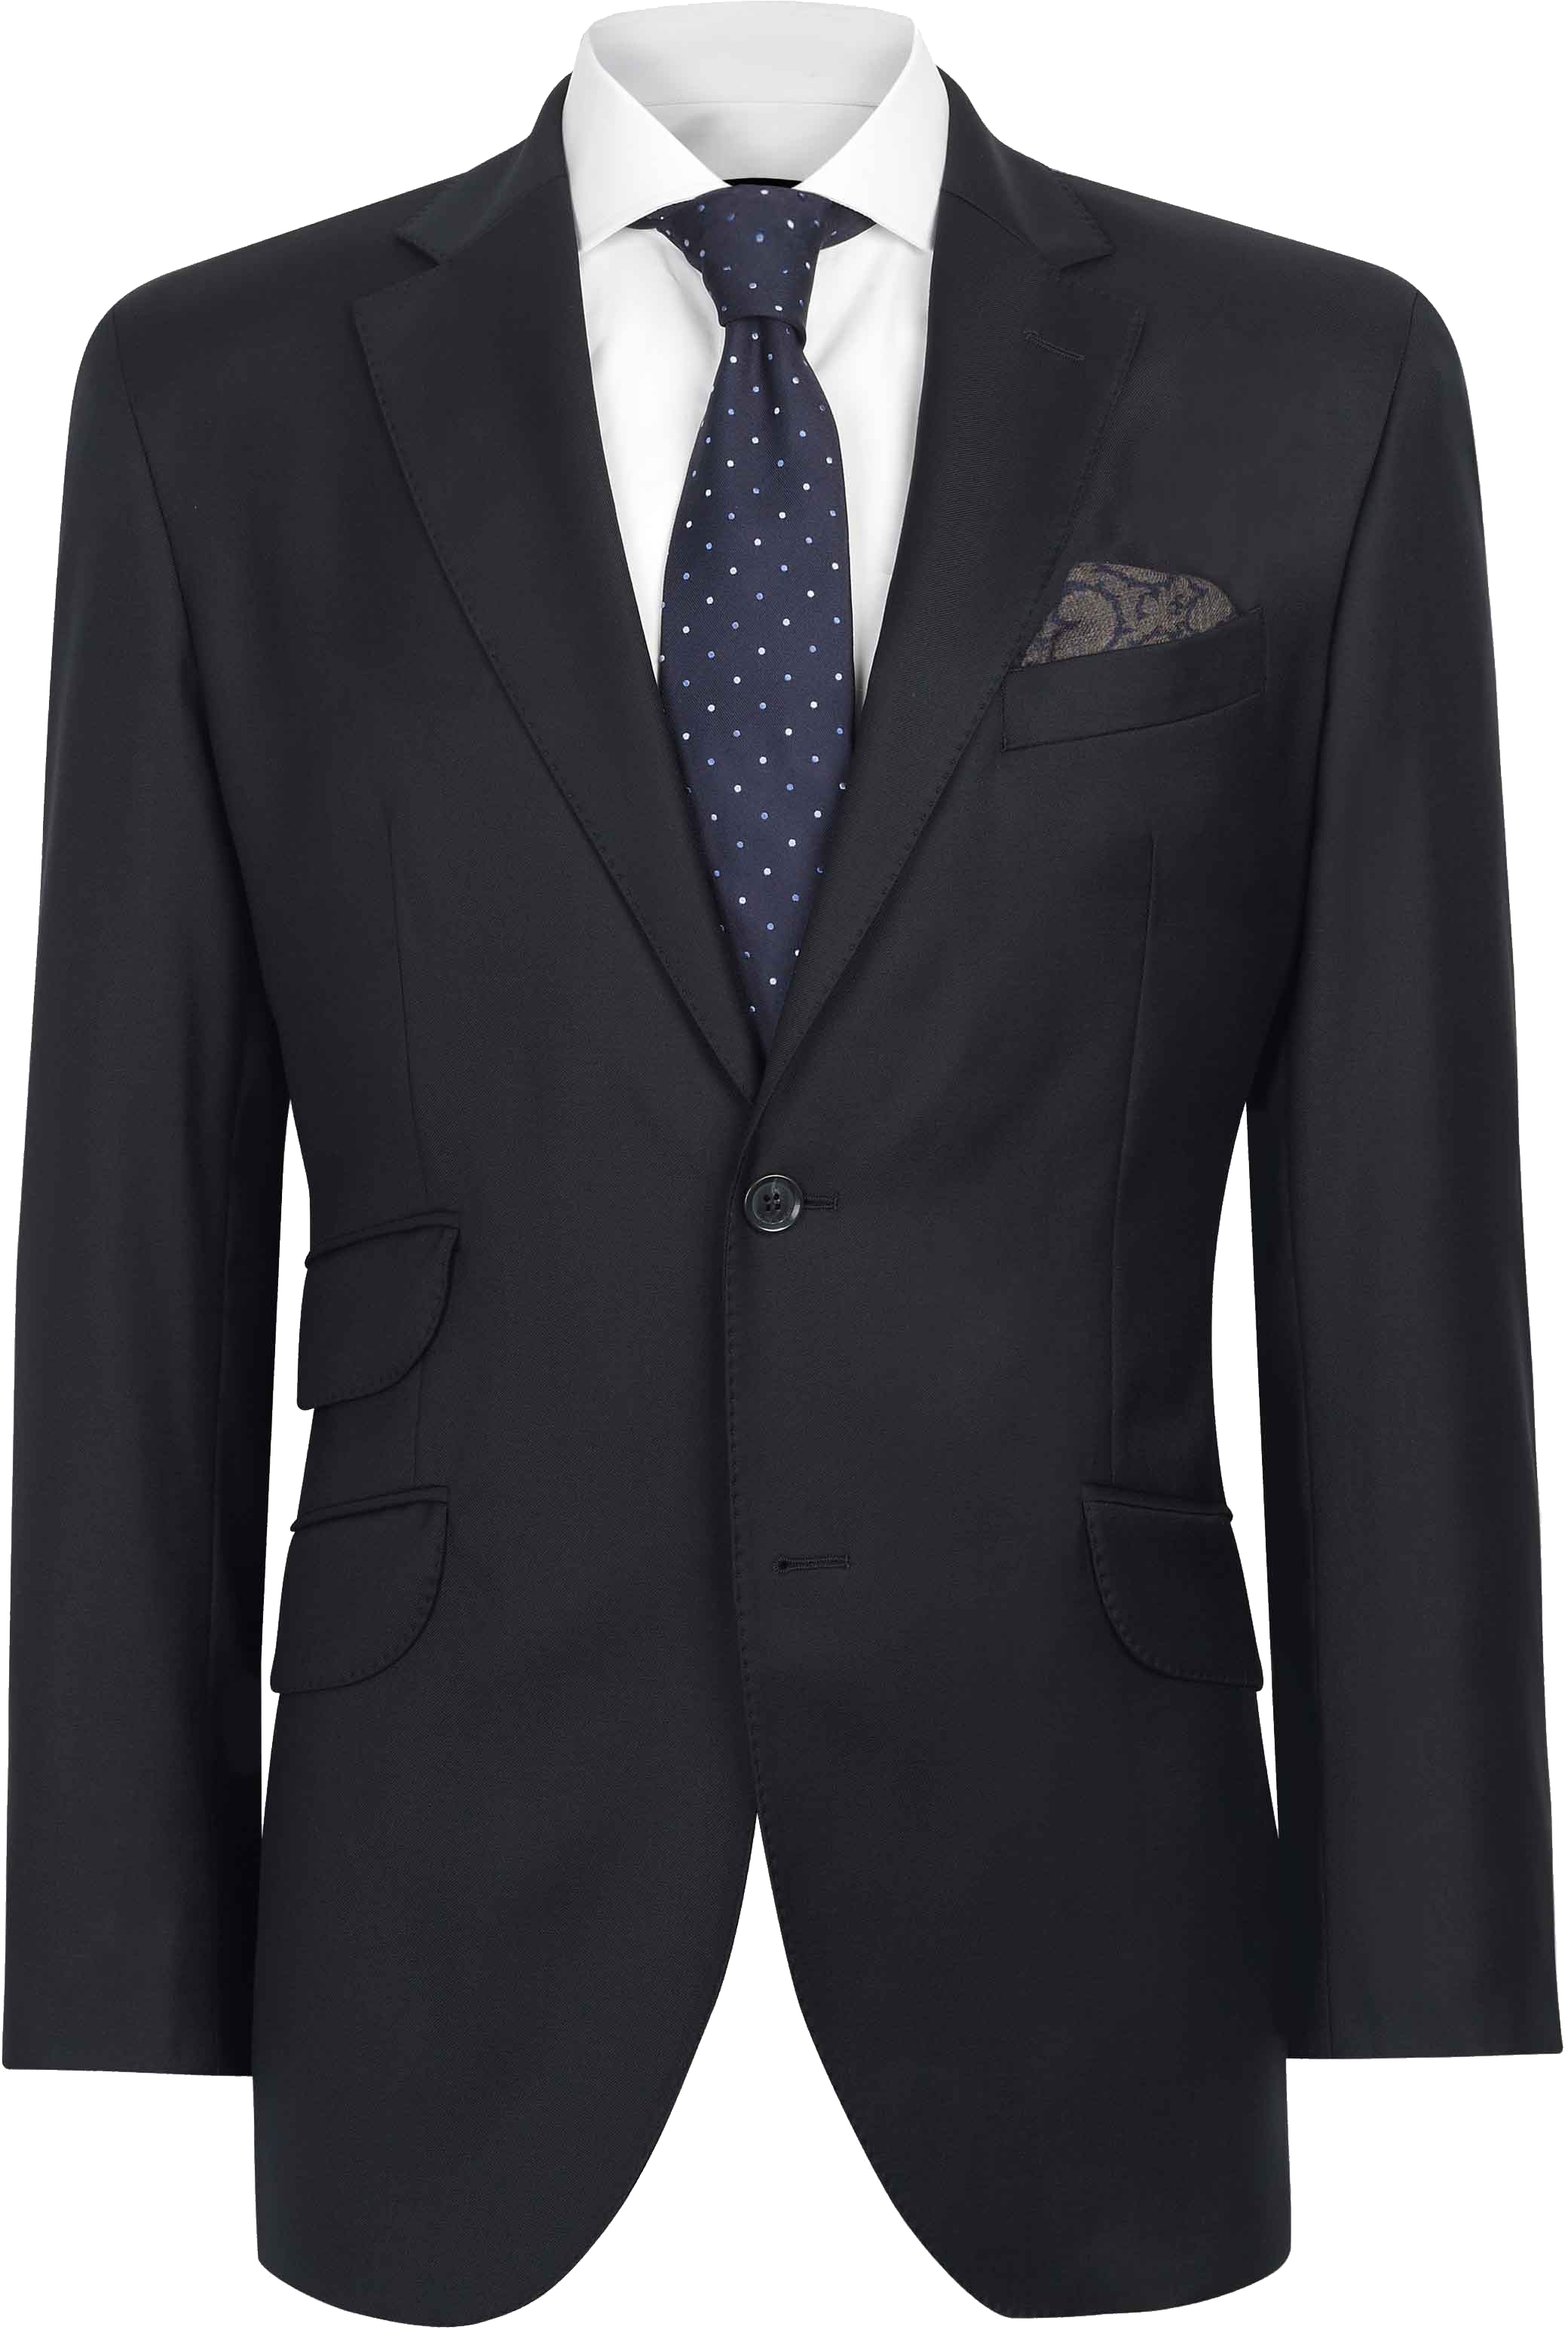 Suit Png Image - Coat, Transparent background PNG HD thumbnail